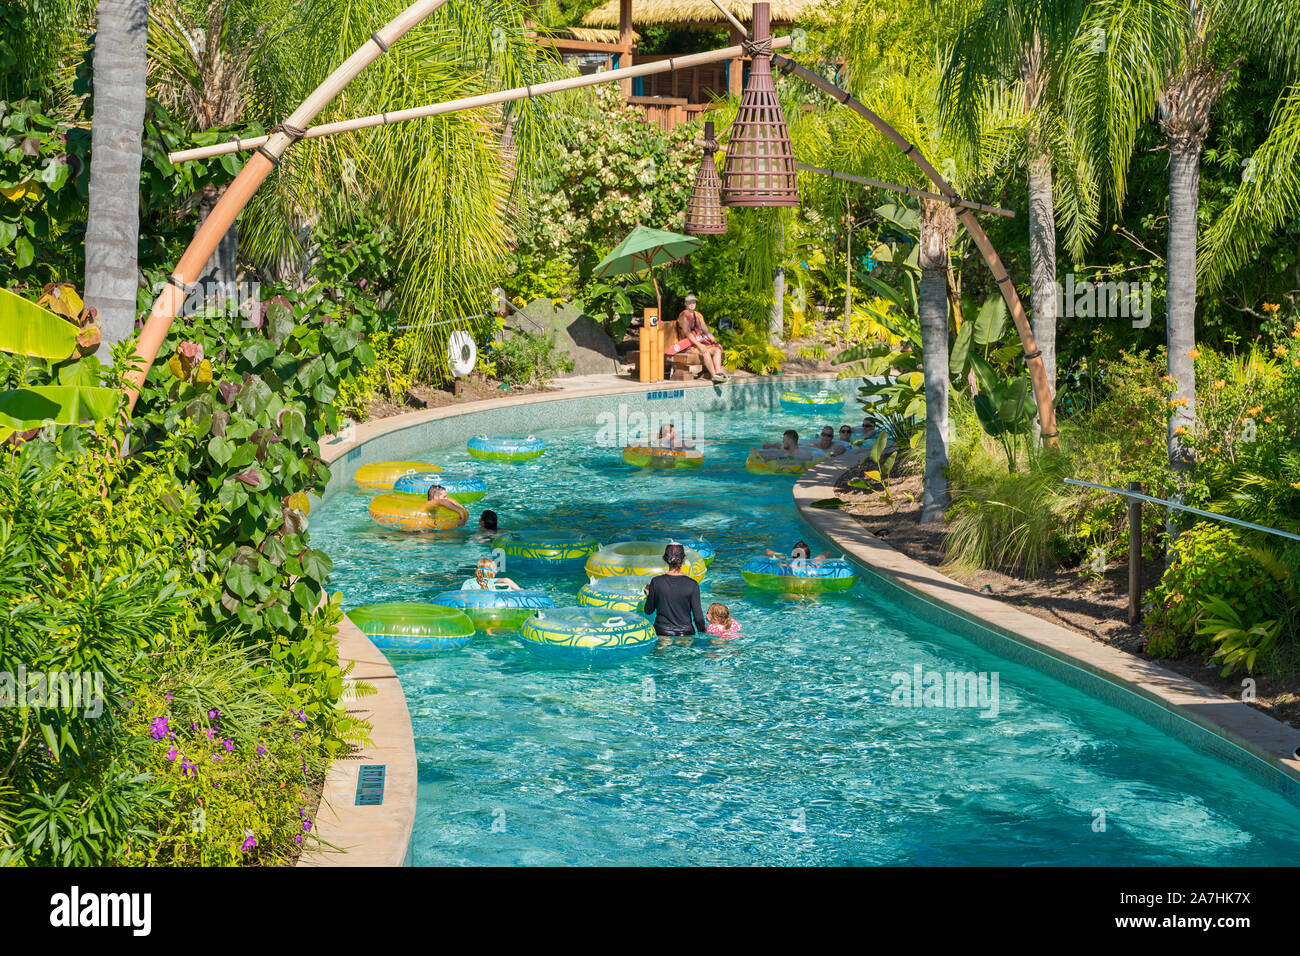 Vulcano Kopiko Bay Wai serpeggiante fiume, Ride, persone al Parco Acquatico, Universal Orlando Resort, Florida, Stati Uniti d'America Foto Stock